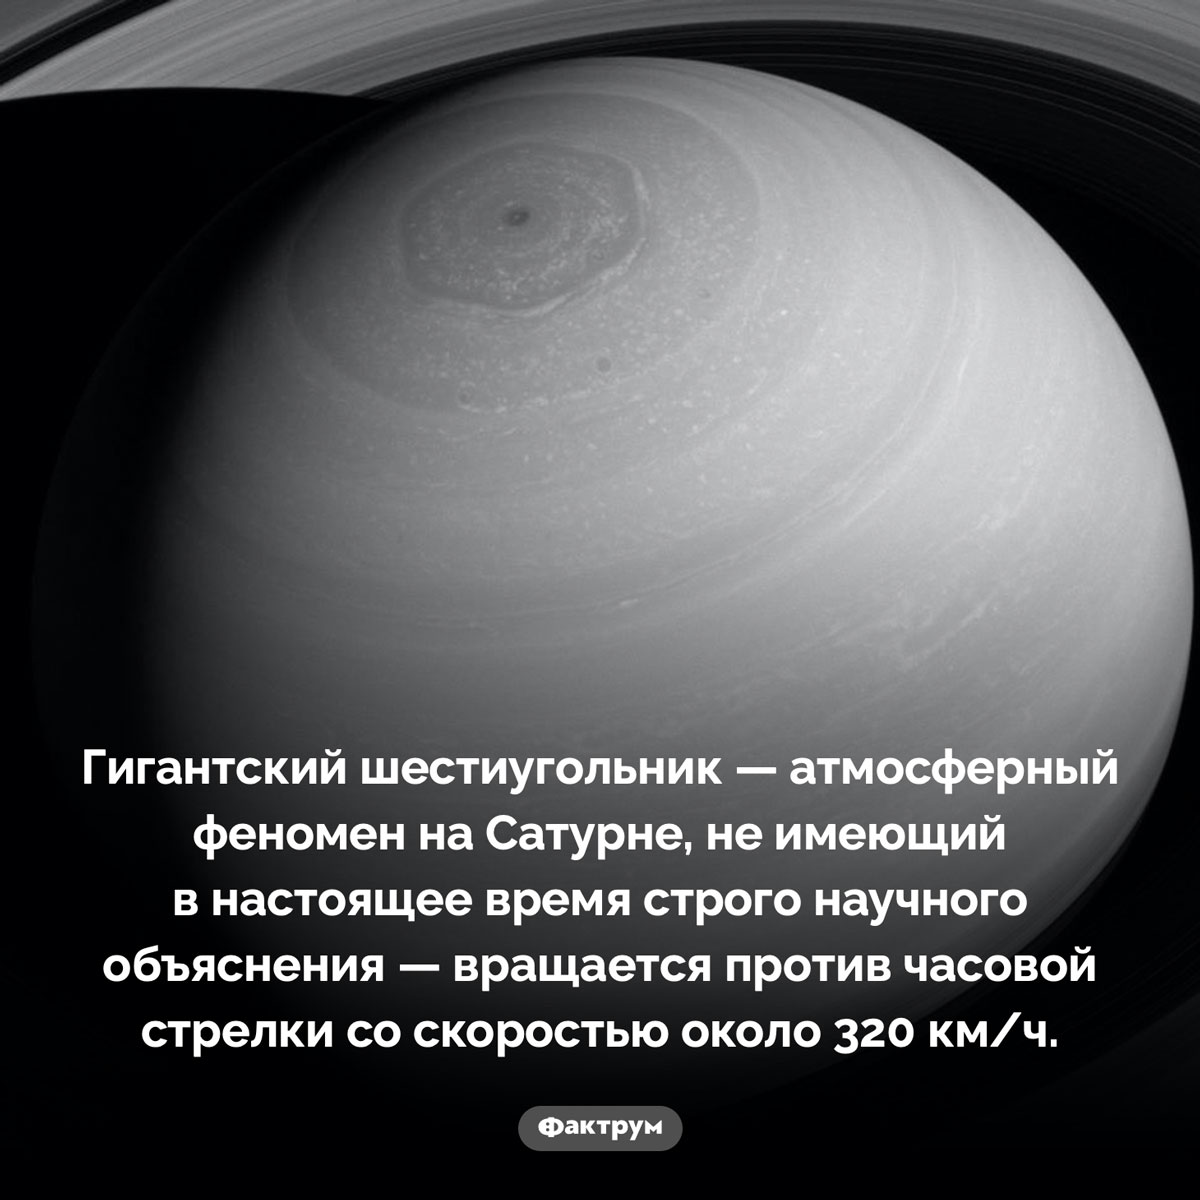 Шестиугольник Сатурна. Гигантский шестиугольник — атмосферный феномен на Сатурне, не имеющий в настоящее время строго научного объяснения — вращается против часовой стрелки со скоростью около 320 км/ч.